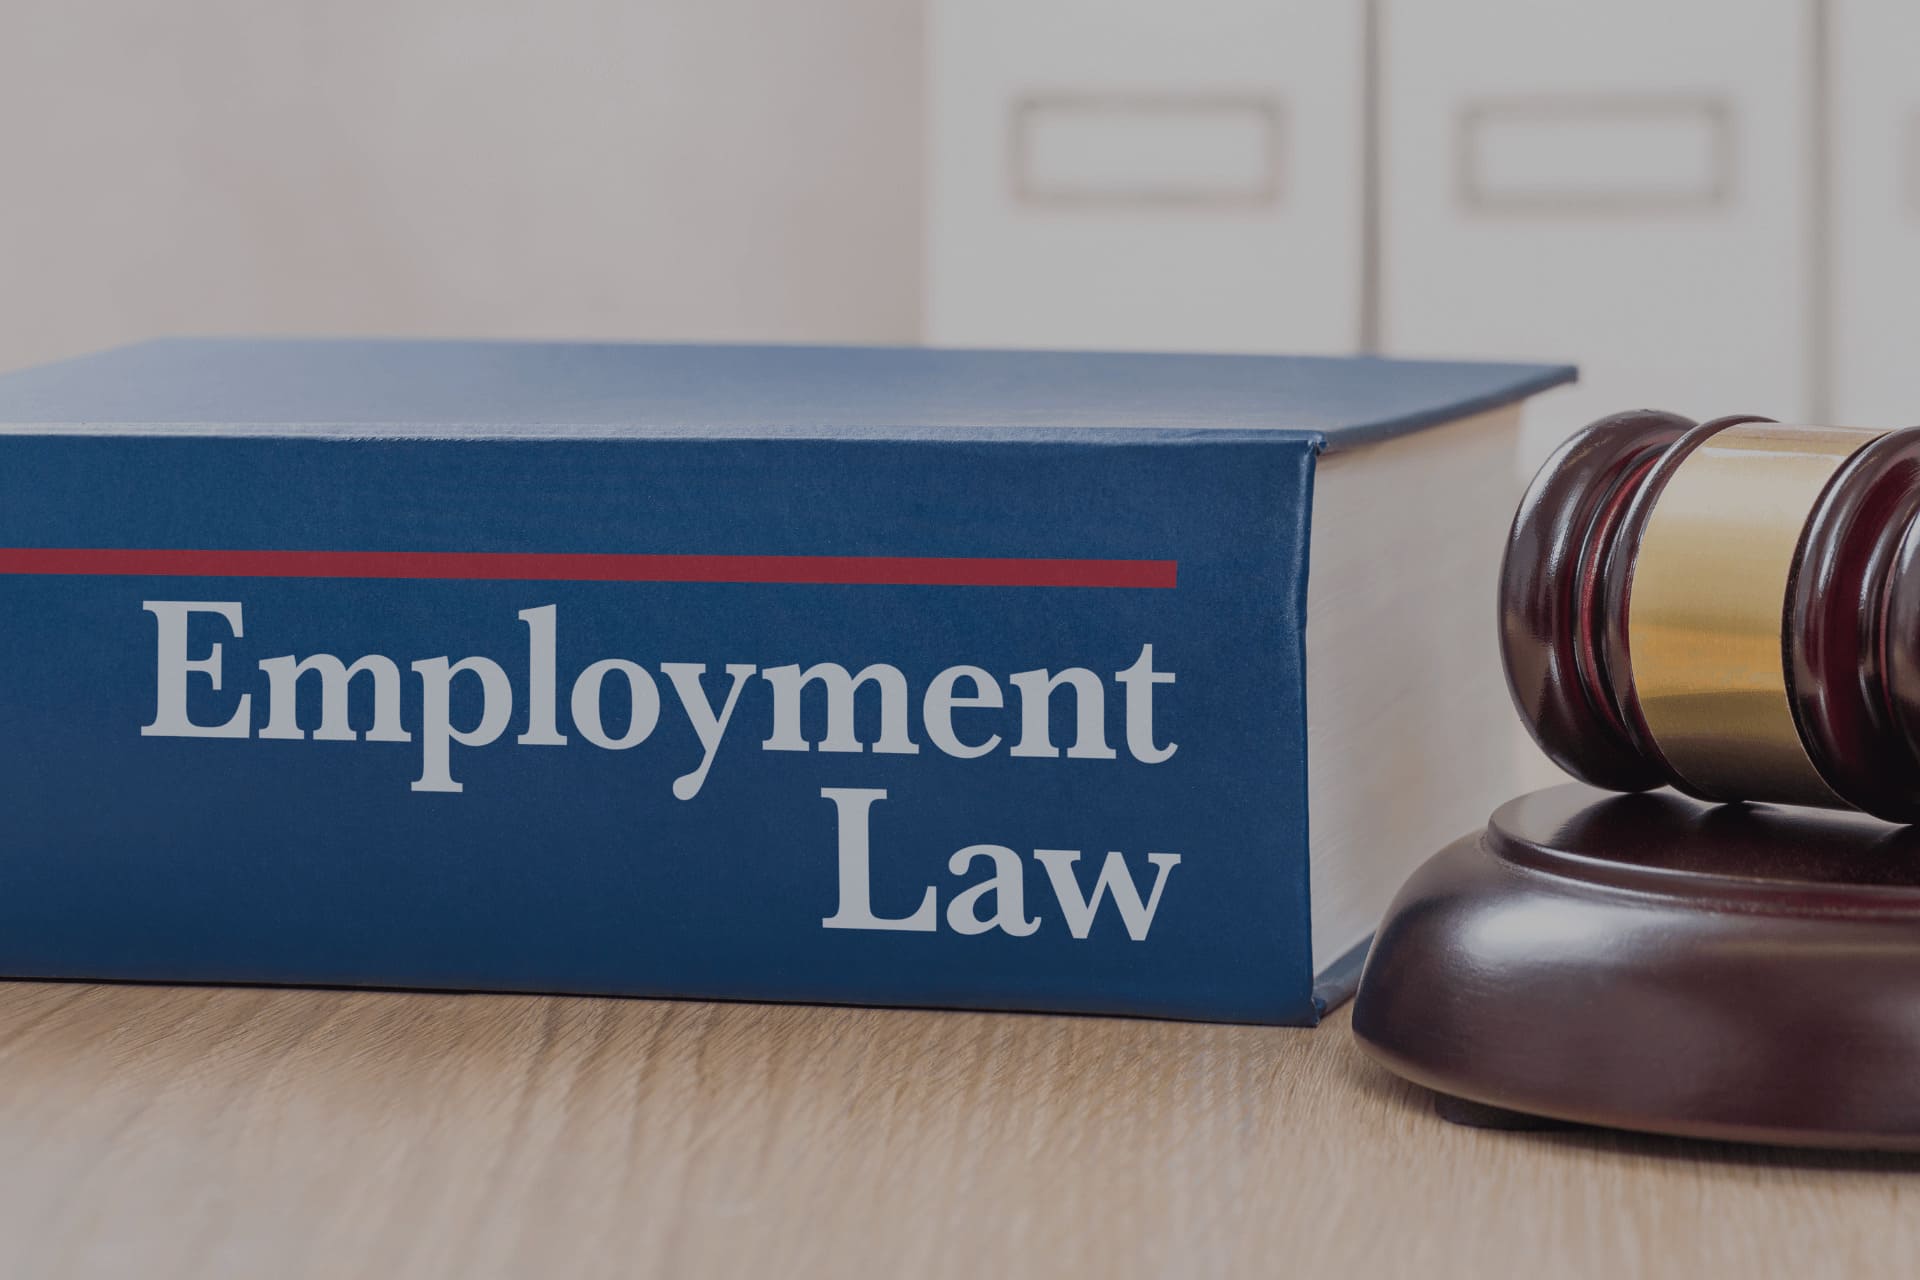 Employment Law in Thailand